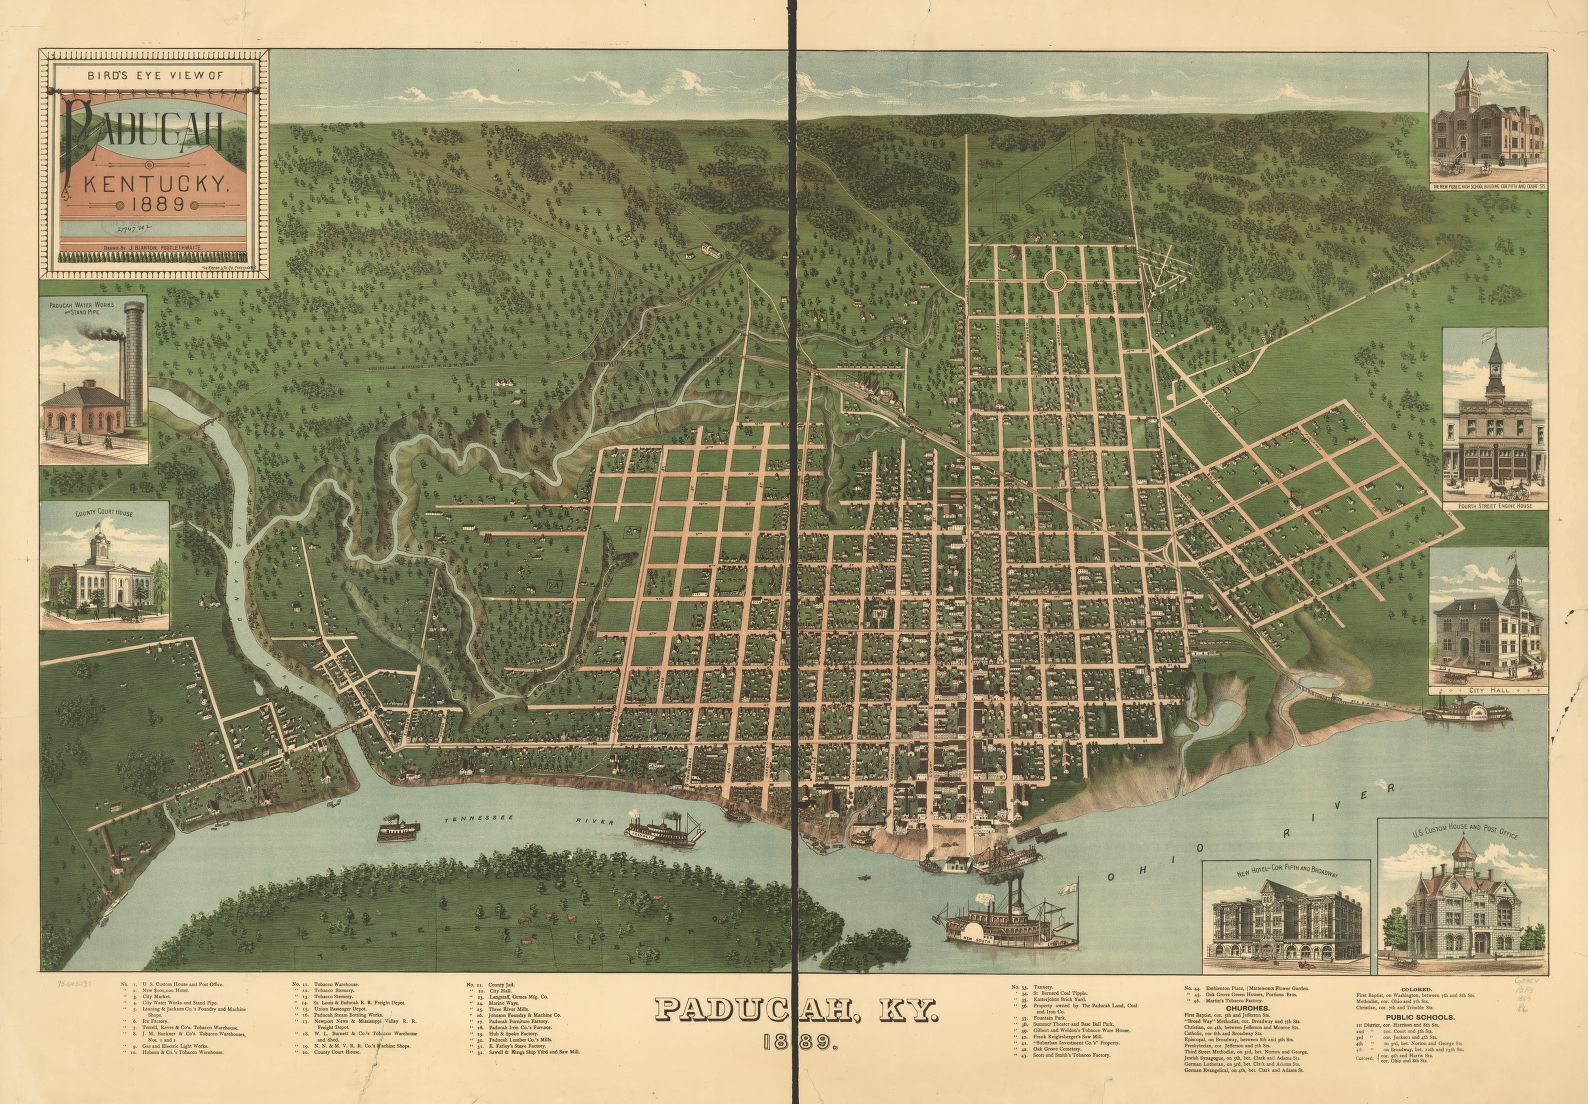 1889 Paducah map